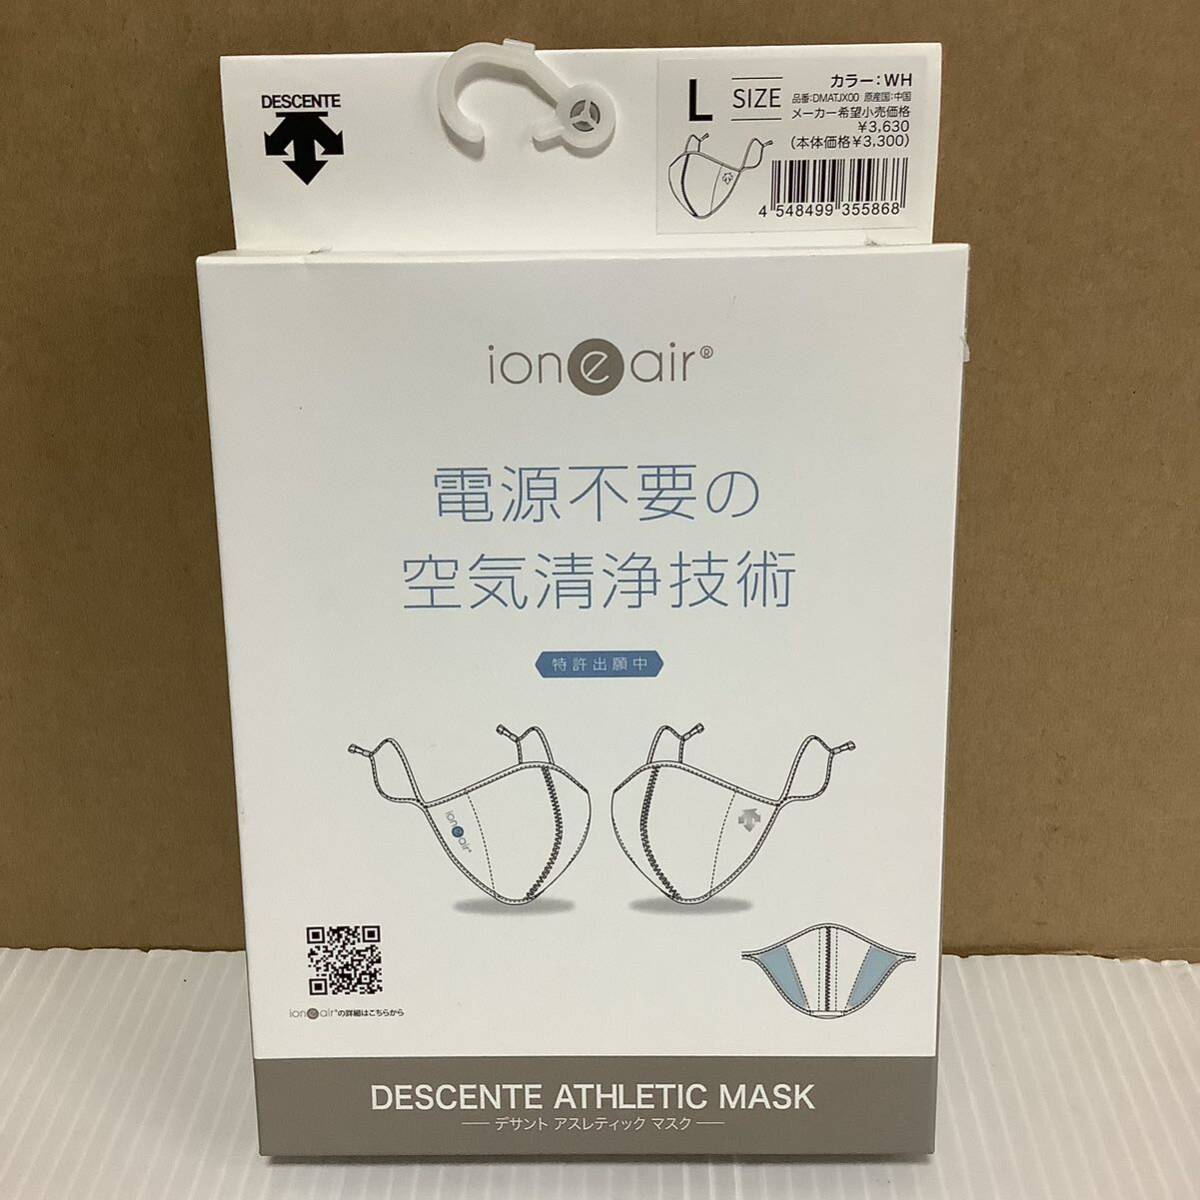 デサント マスク スポーツマスク 花粉対策 DMATJX00 WH Lサイズ 白 ホワイト DESCENTE 新品未使用 アスレティックマスク_画像1